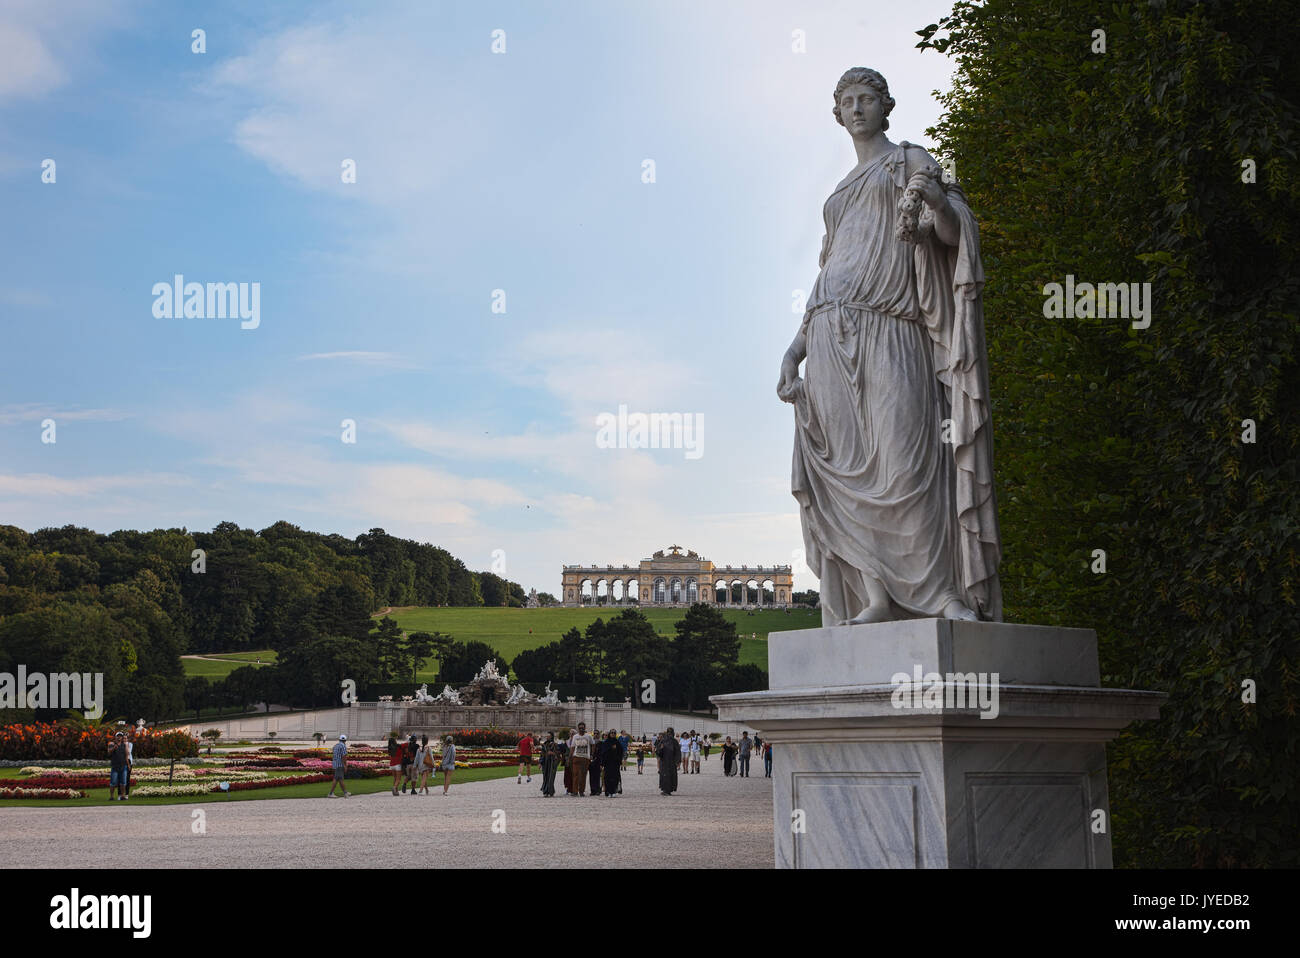 Palazzo di Schonbrunn, sito patrimonio mondiale dell'unesco, Vienna, Austria. Foto Stock